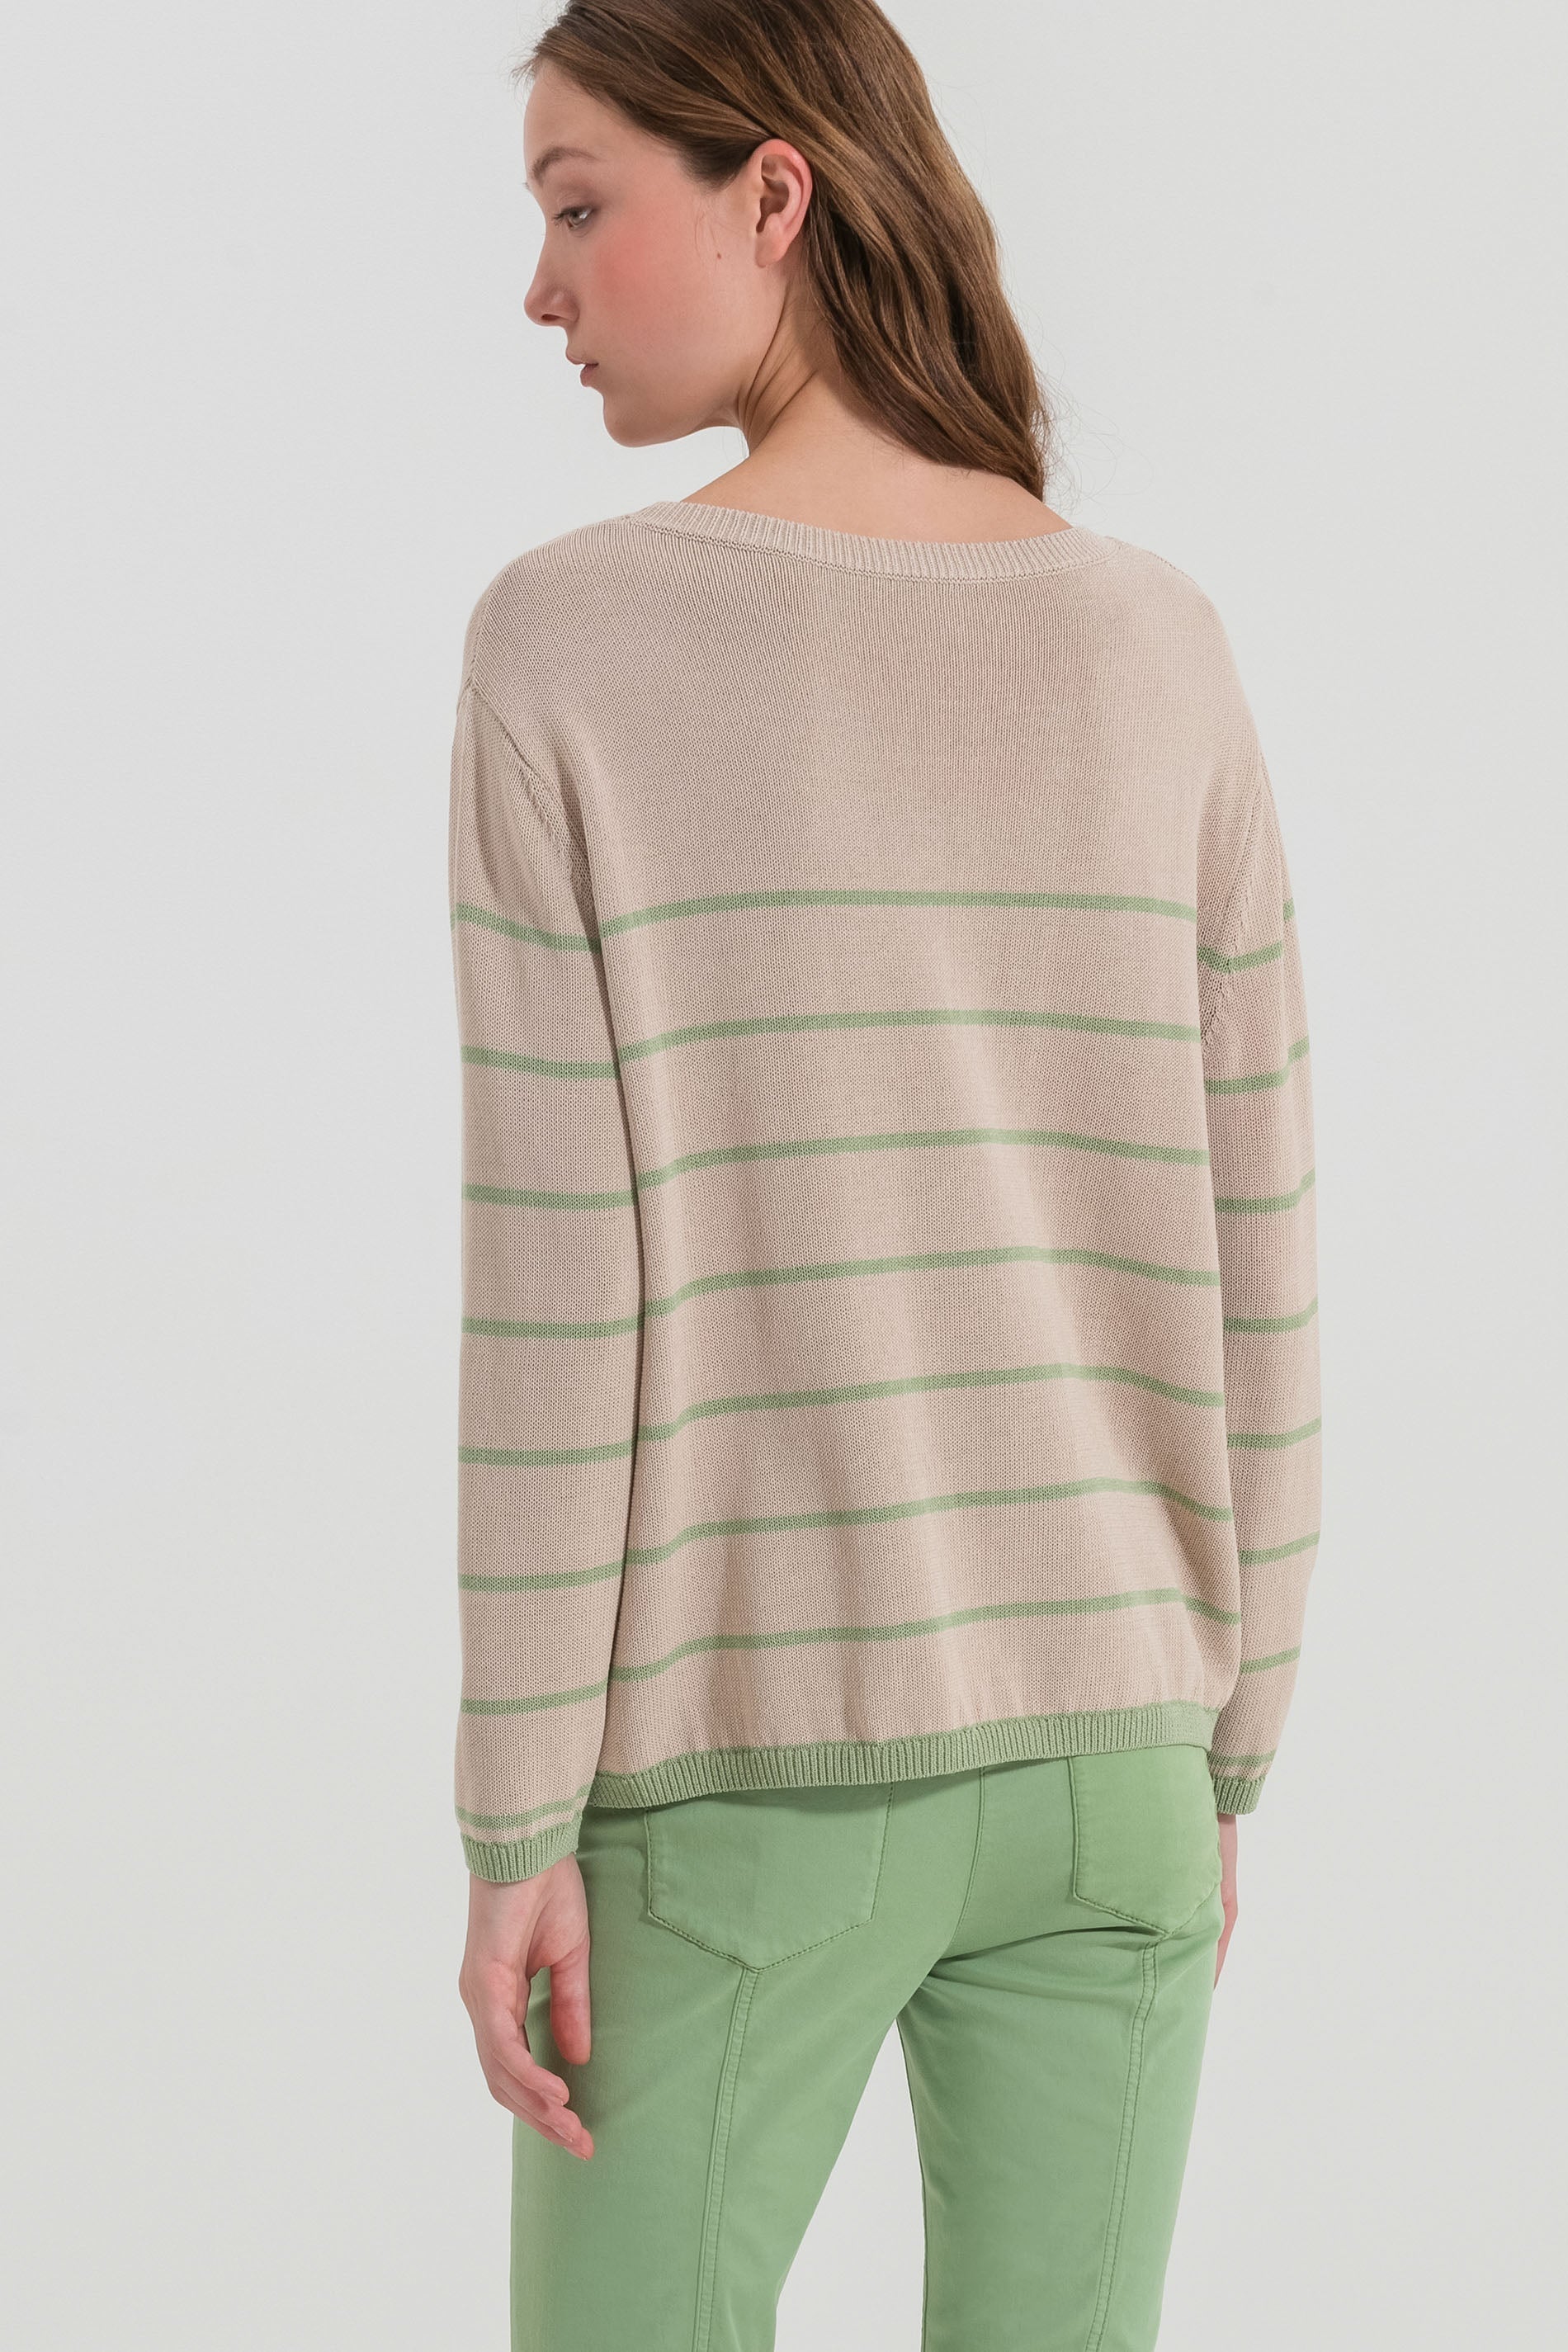 LUISA CERANO-OUTLET-SALE-Pullover mit Streifen-Design-Strick-by-ARCHIVIST